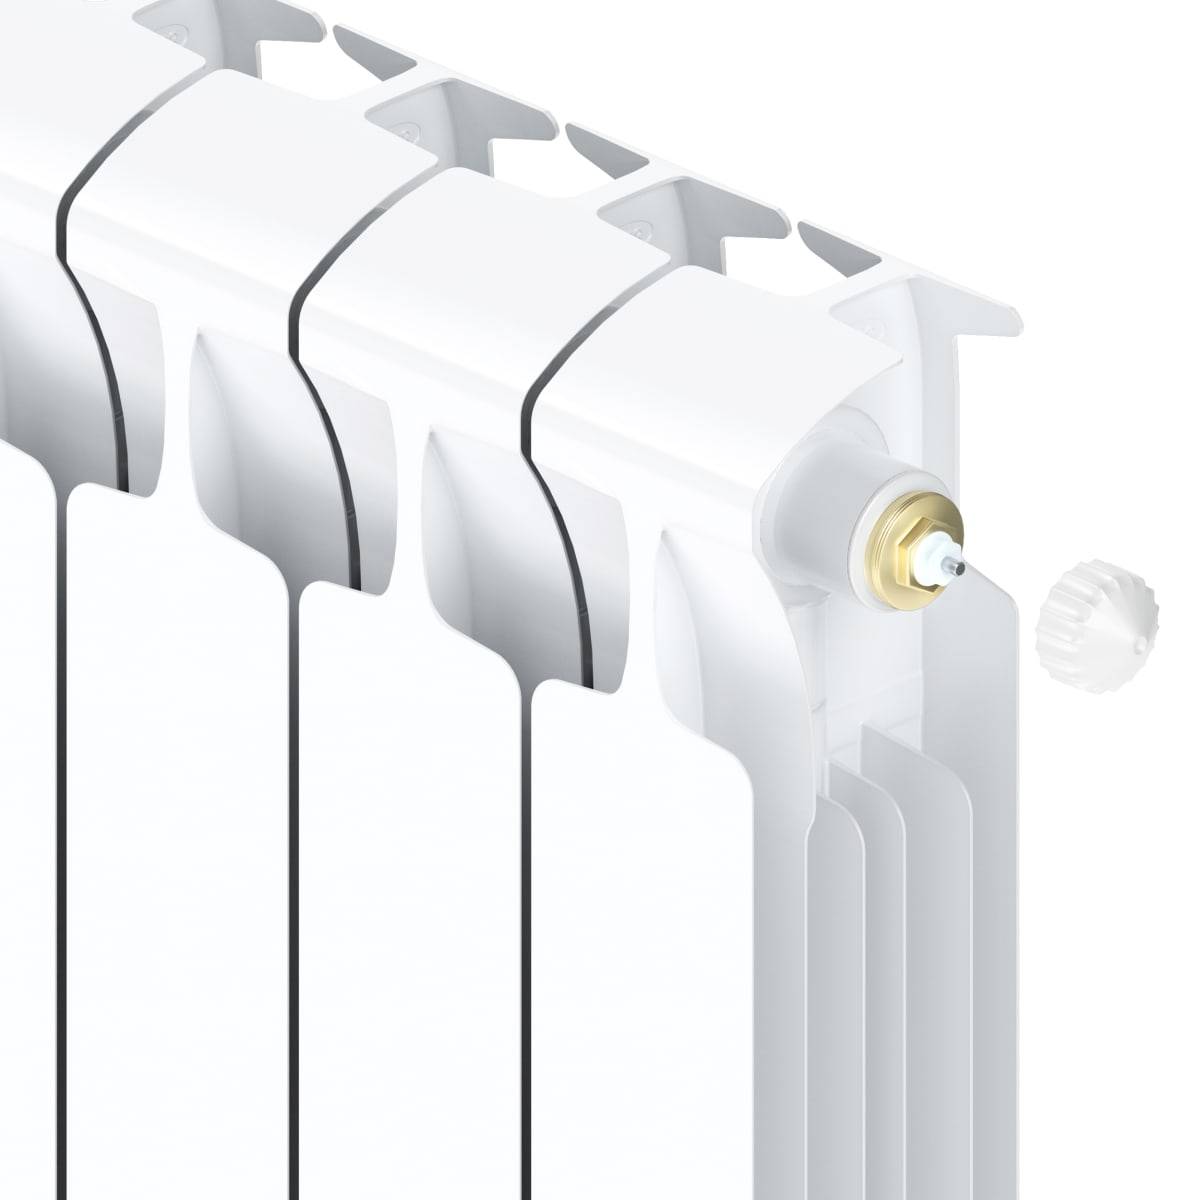 Биметаллические радиаторы отопления: как выбрать, какие фирмы лучше, технические характеристики, отзывы